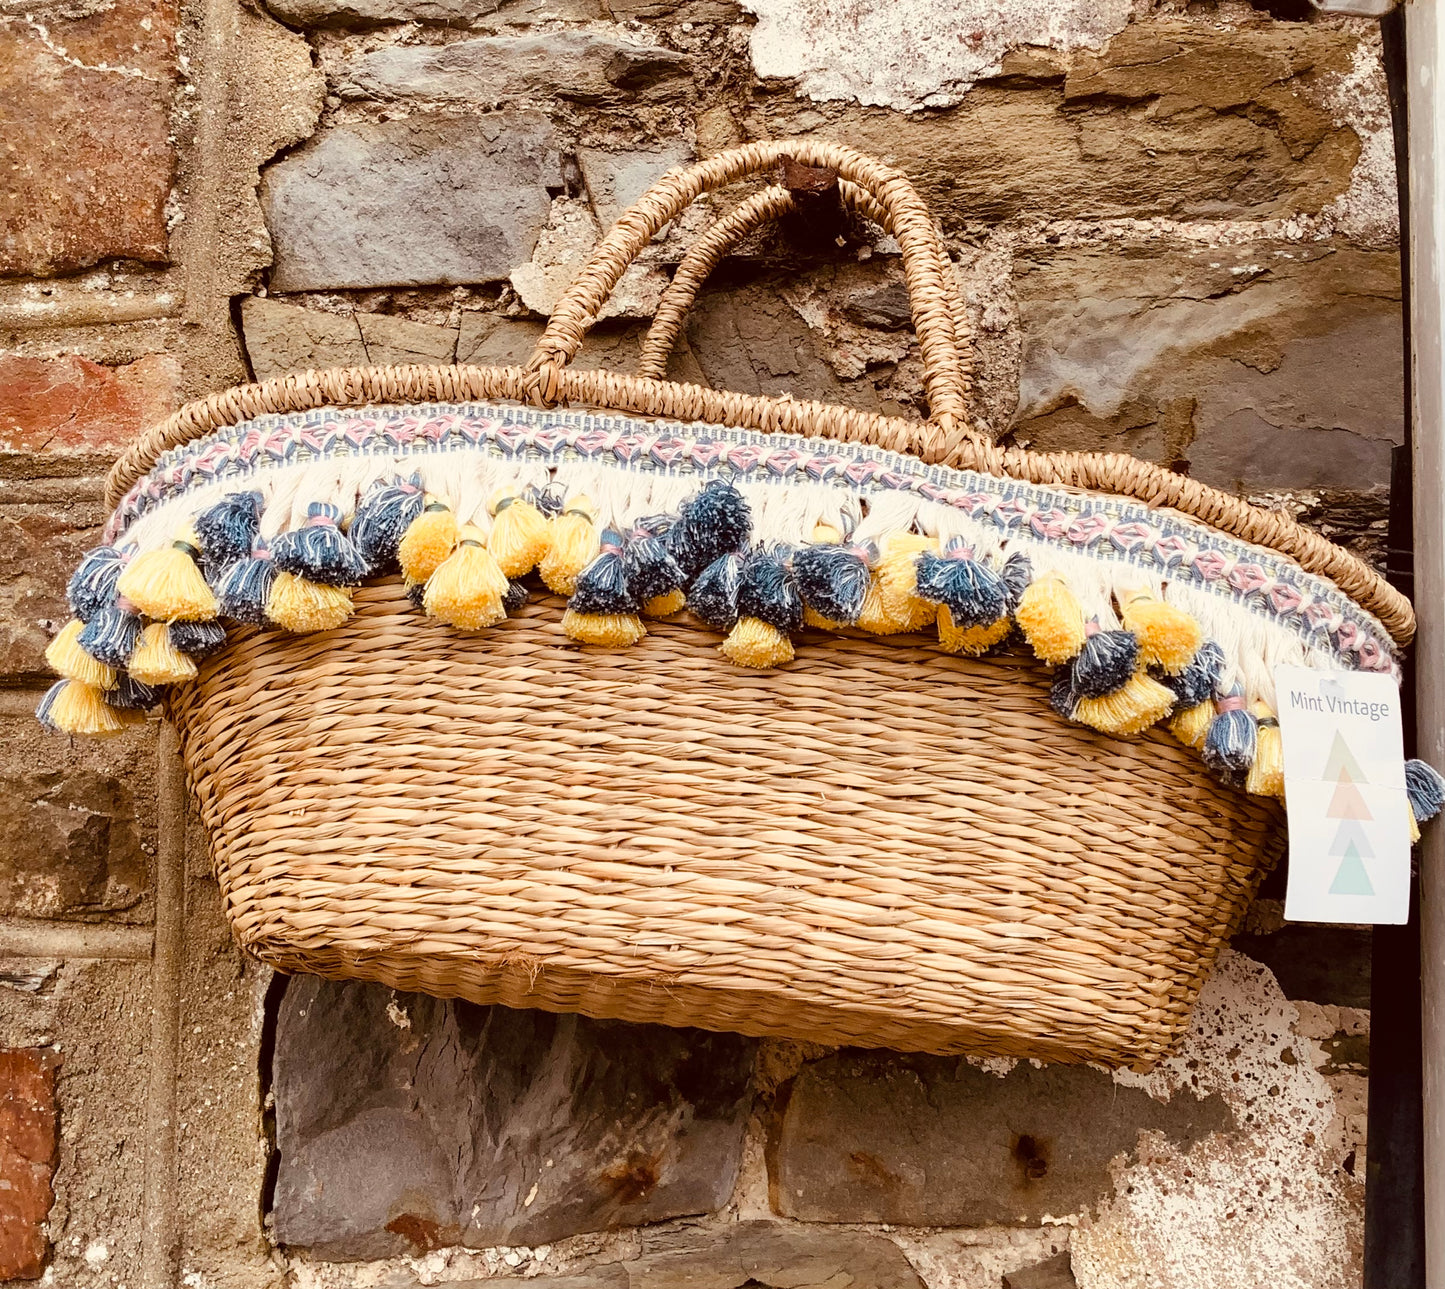 Market basket with vintage tassle trim